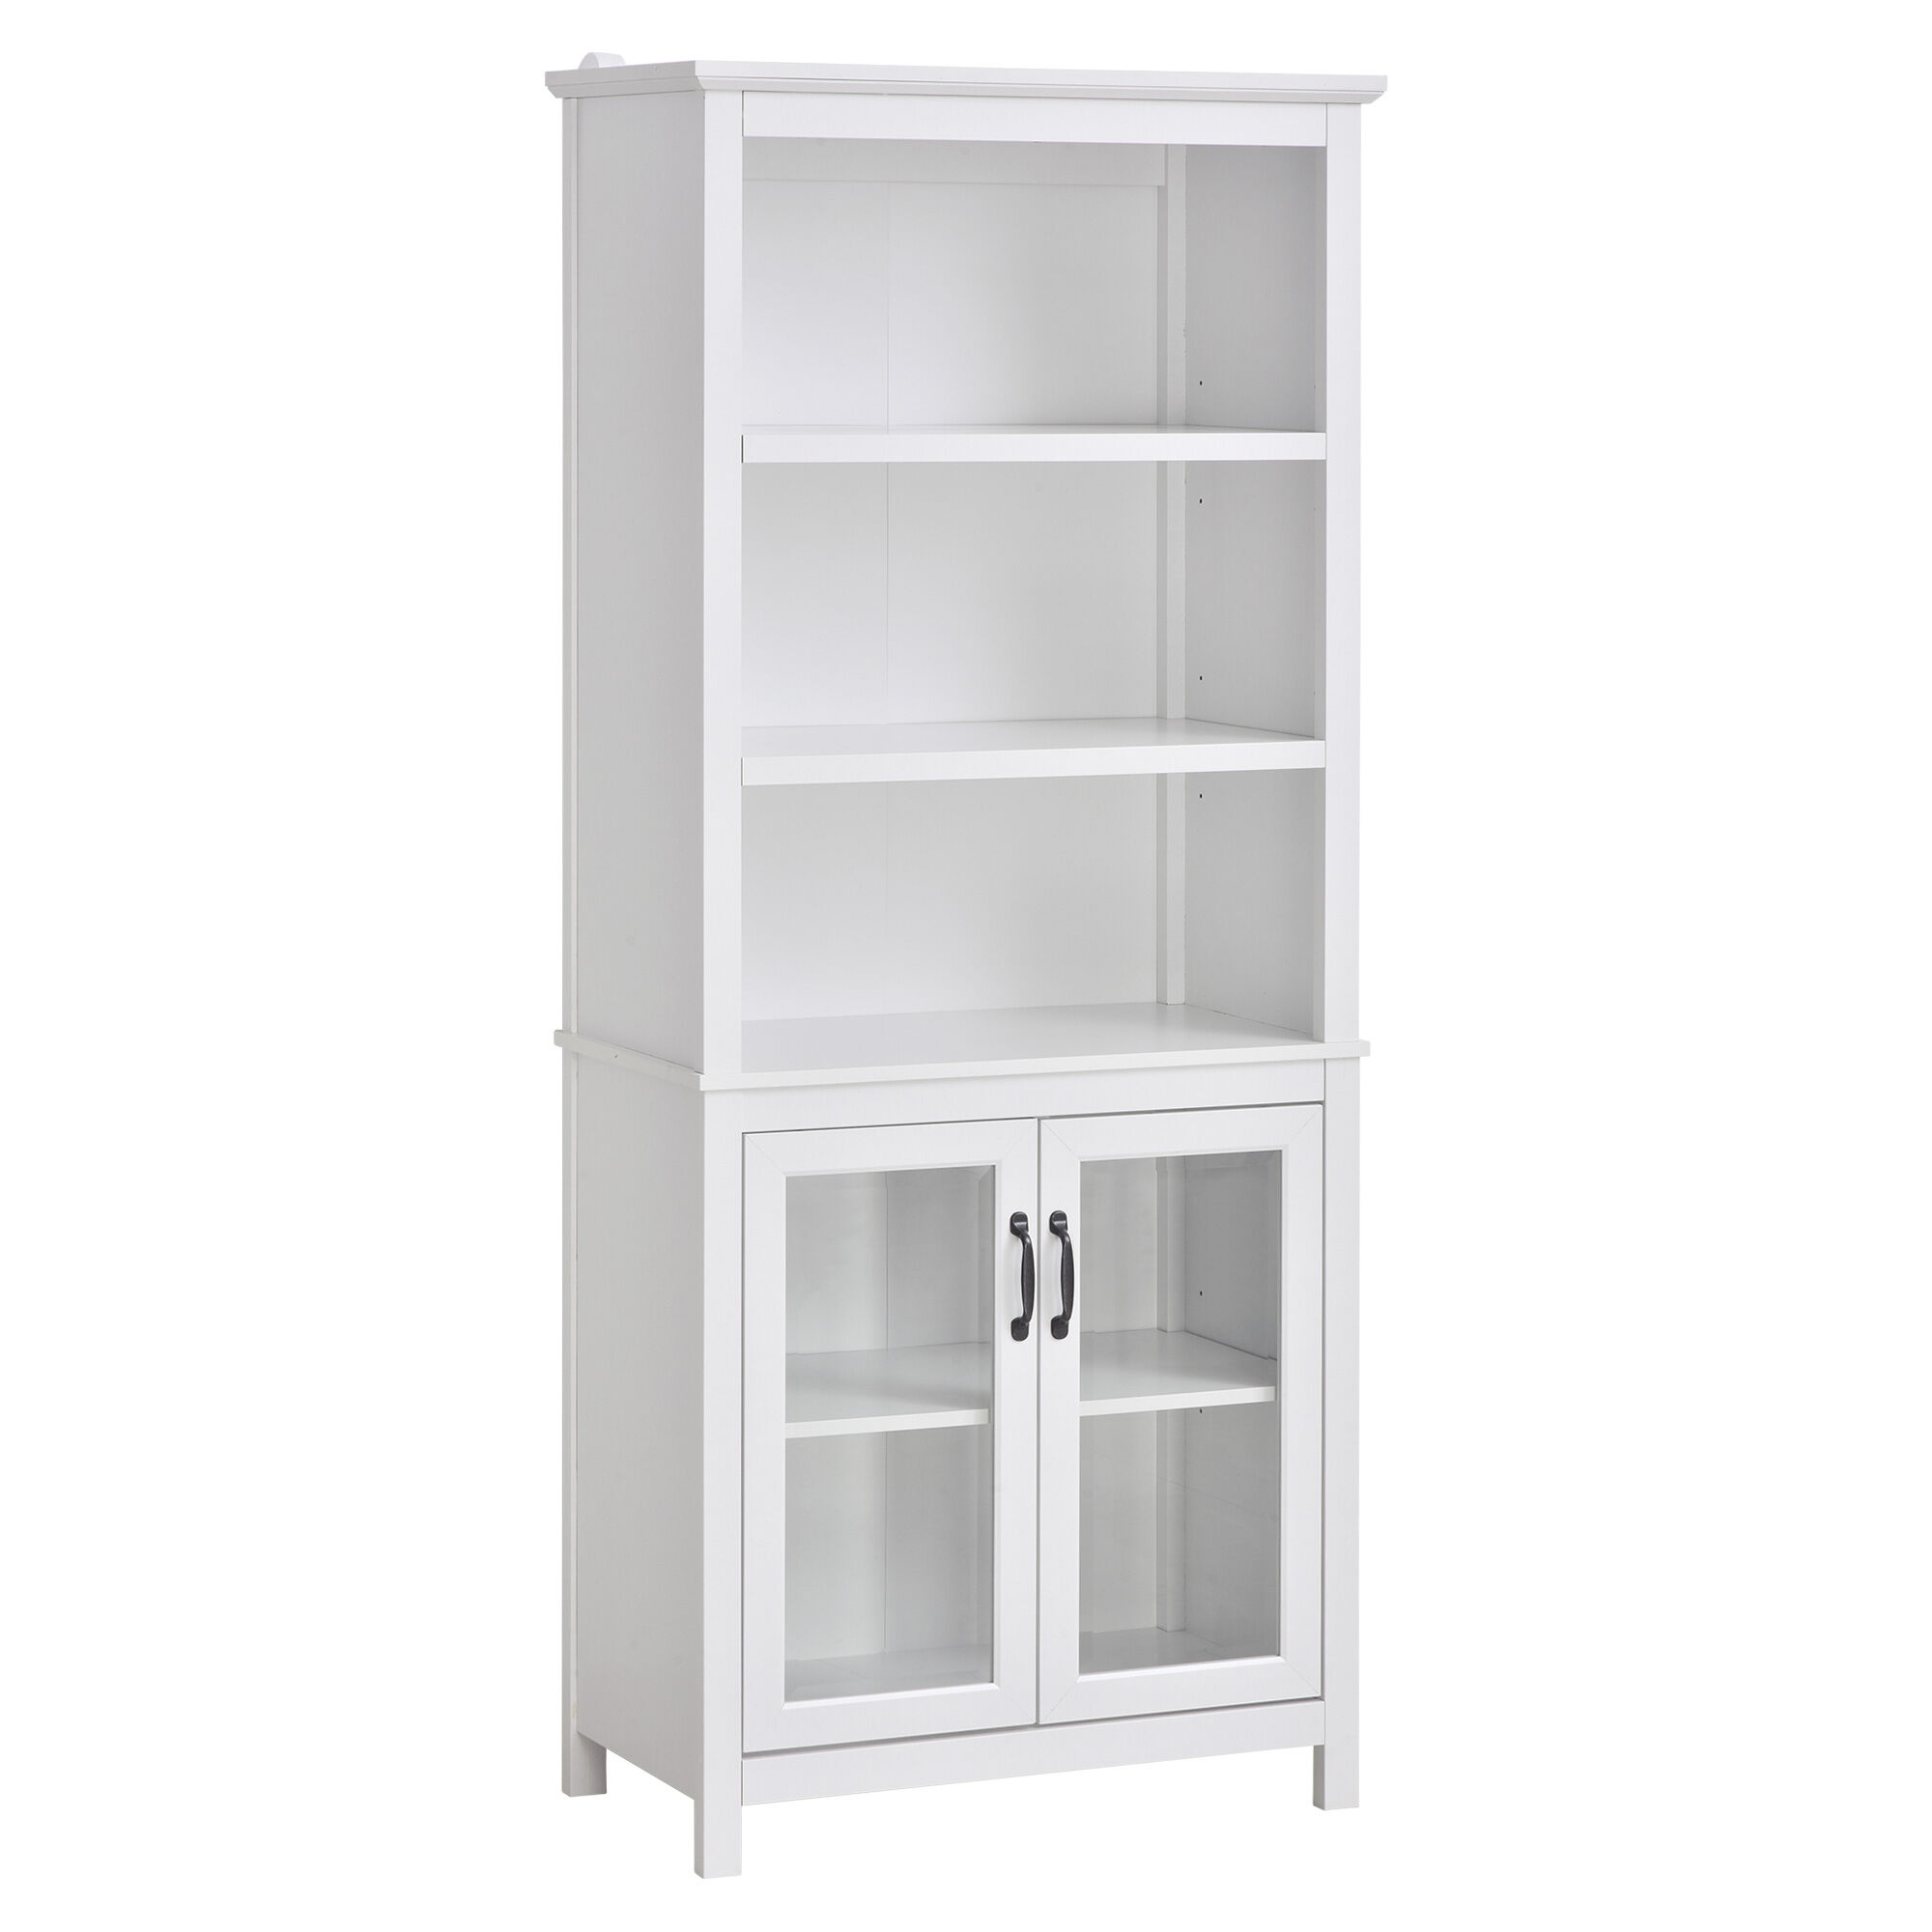 HOMCOM Elegant Bookshelf Cabinet with 3 Open Shelves Double-Door for Home Office Living Room Display White   Aosom.com